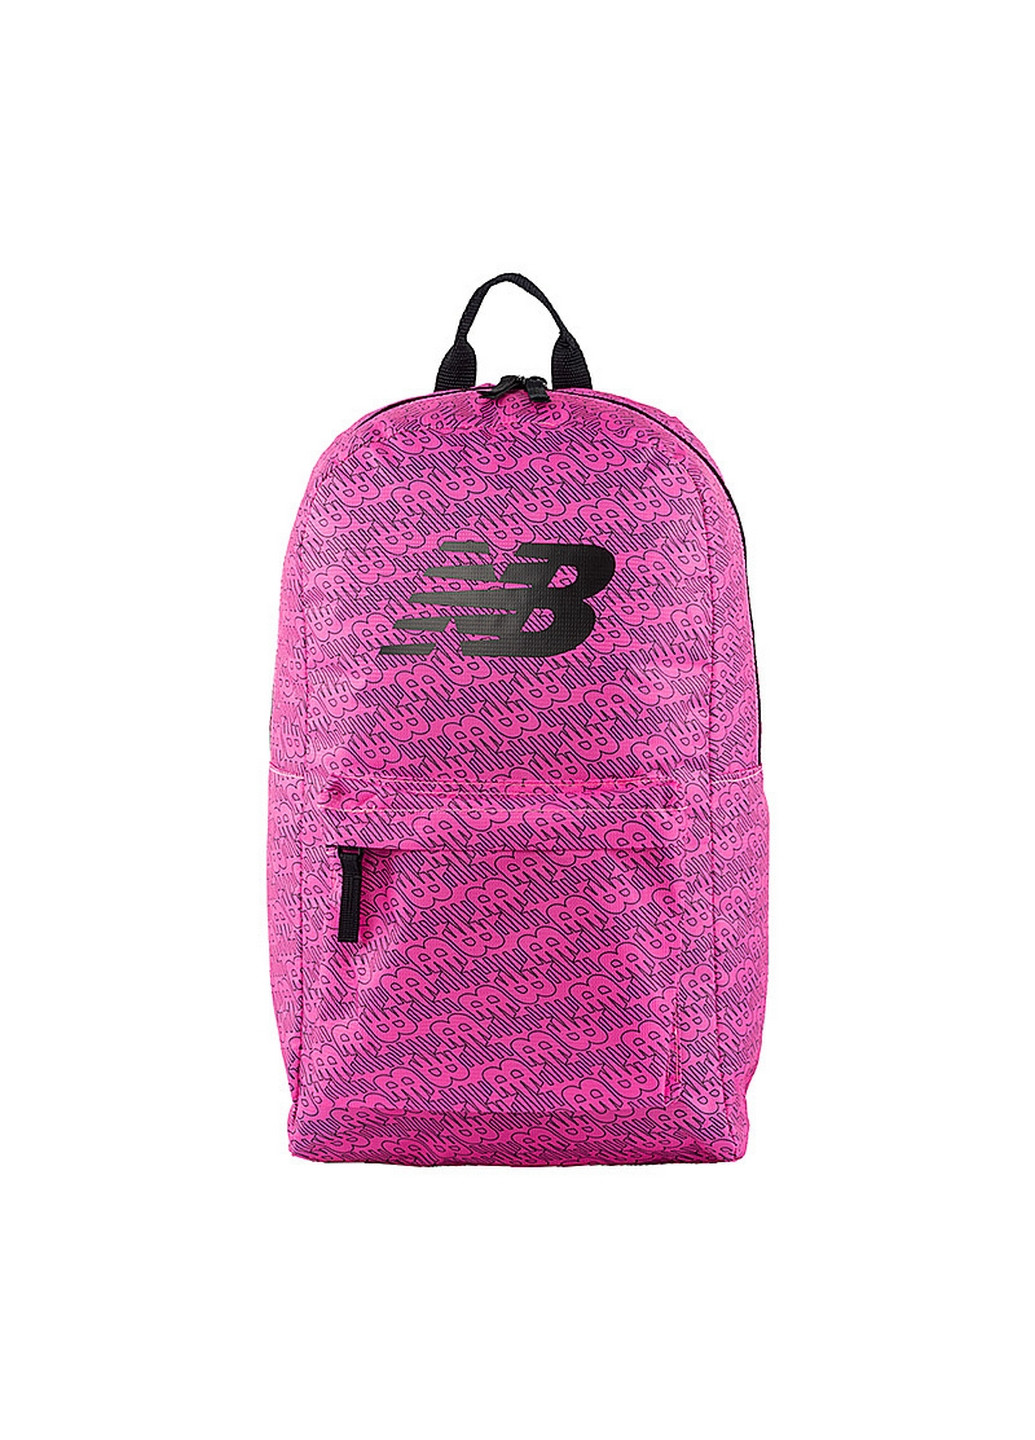 Спортивный рюкзак New Balance opp core backpack (253840604)